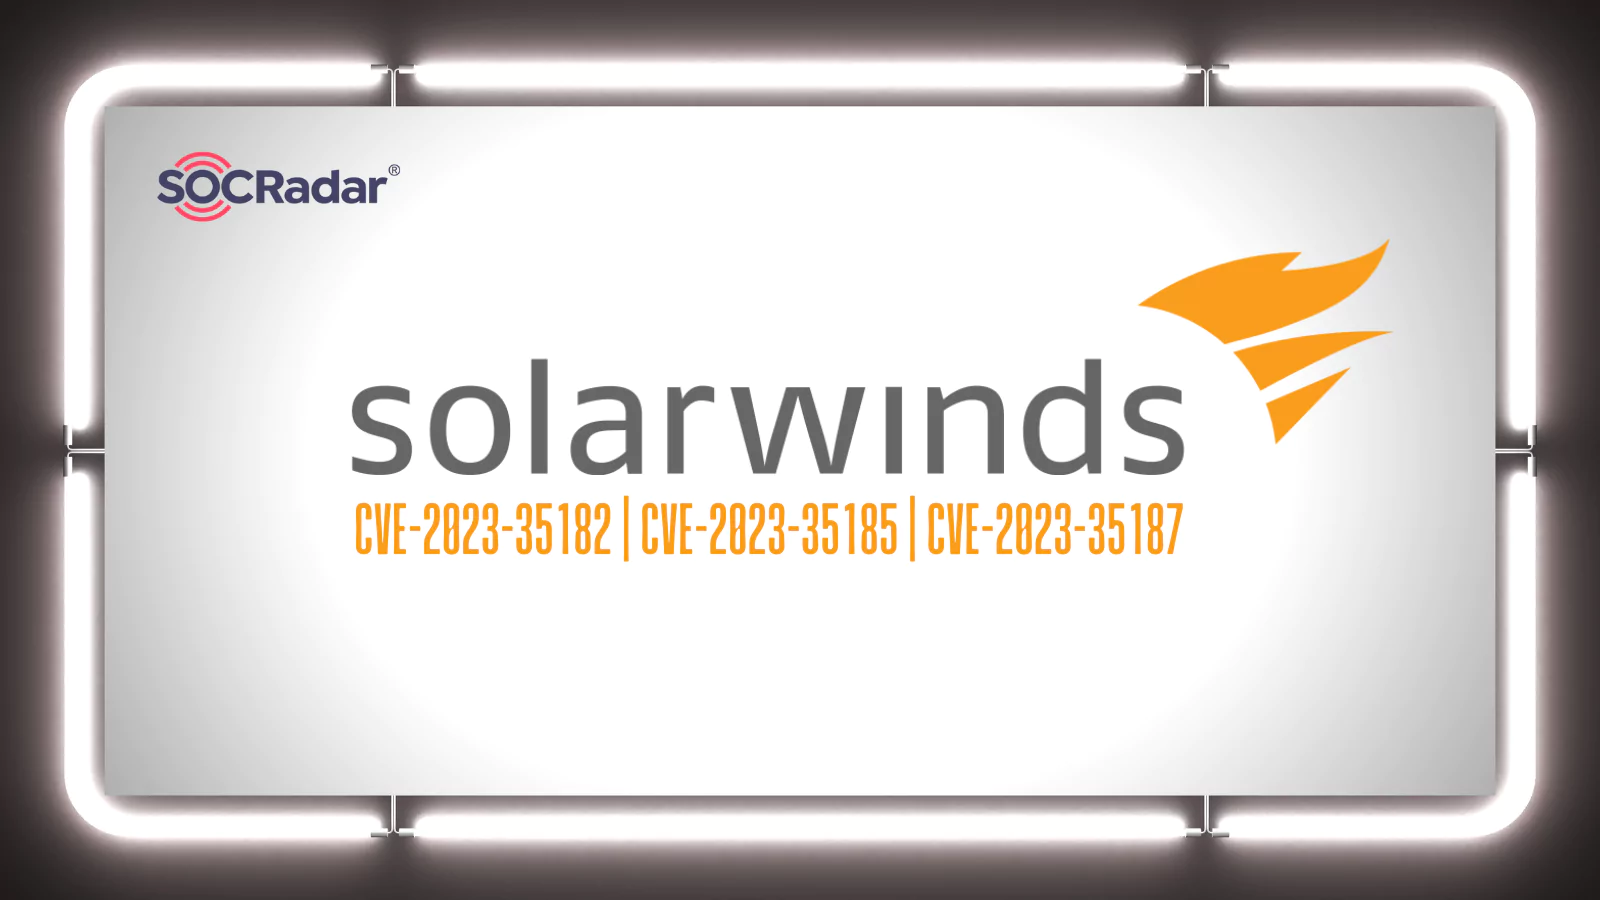 SOCRadar® Cyber Intelligence Inc. | SolarWinds Releases Crucial Fixes for ARM Security Vulnerabilities (CVE-2023-35182, CVE-2023-35185, and CVE-2023-35187)